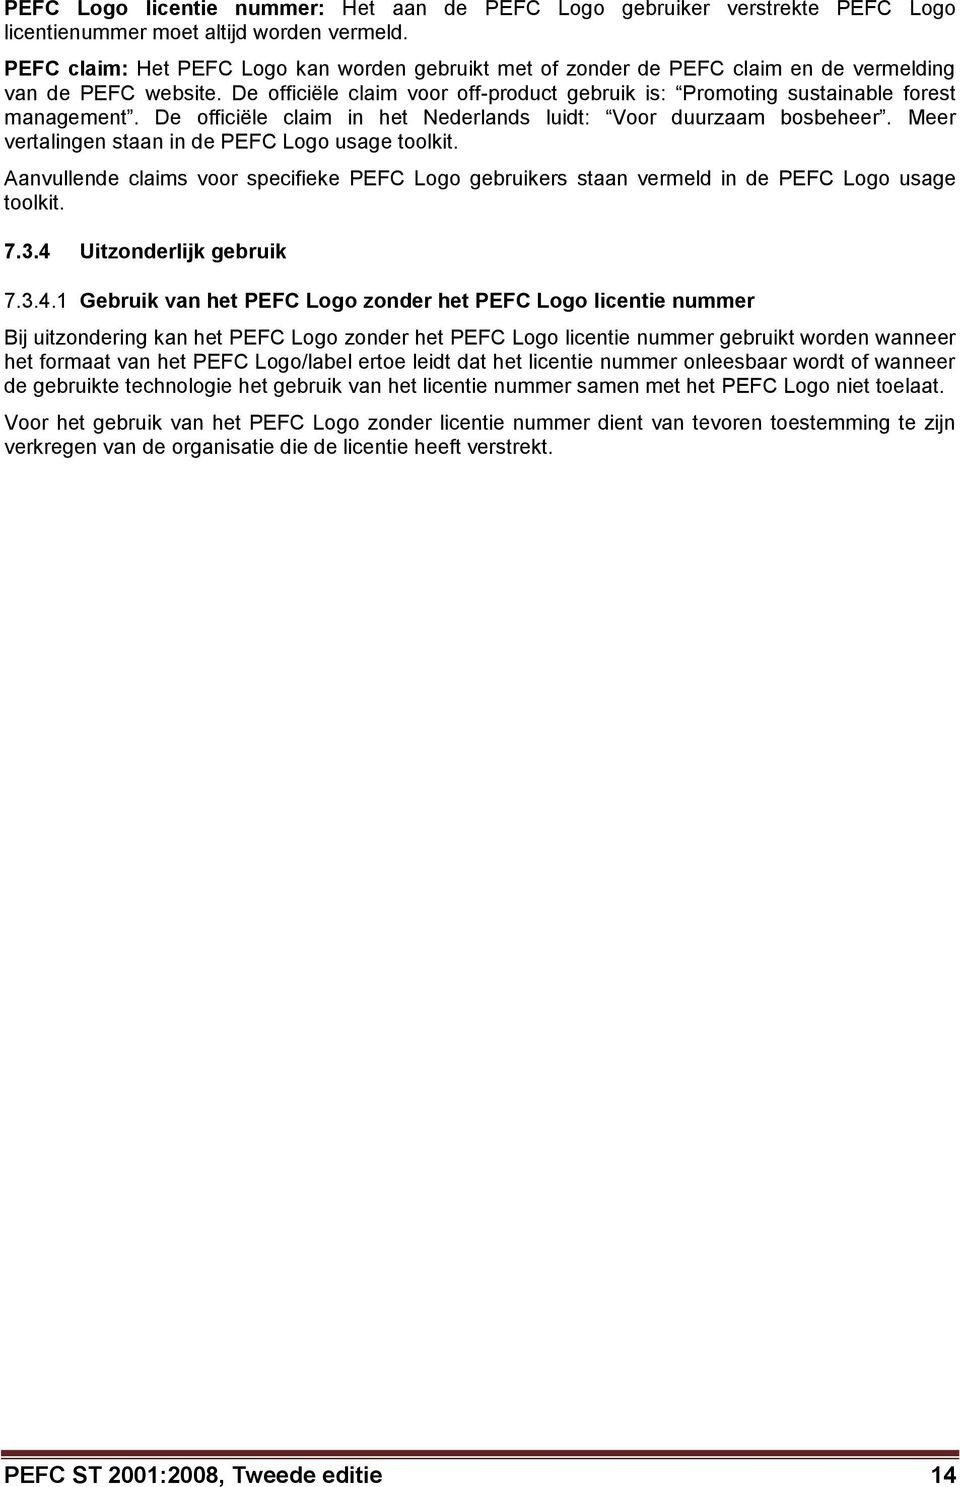 De officiële claim in het Nederlands luidt: Voor duurzaam bosbeheer. Meer vertalingen staan in de PEFC Logo usage toolkit.